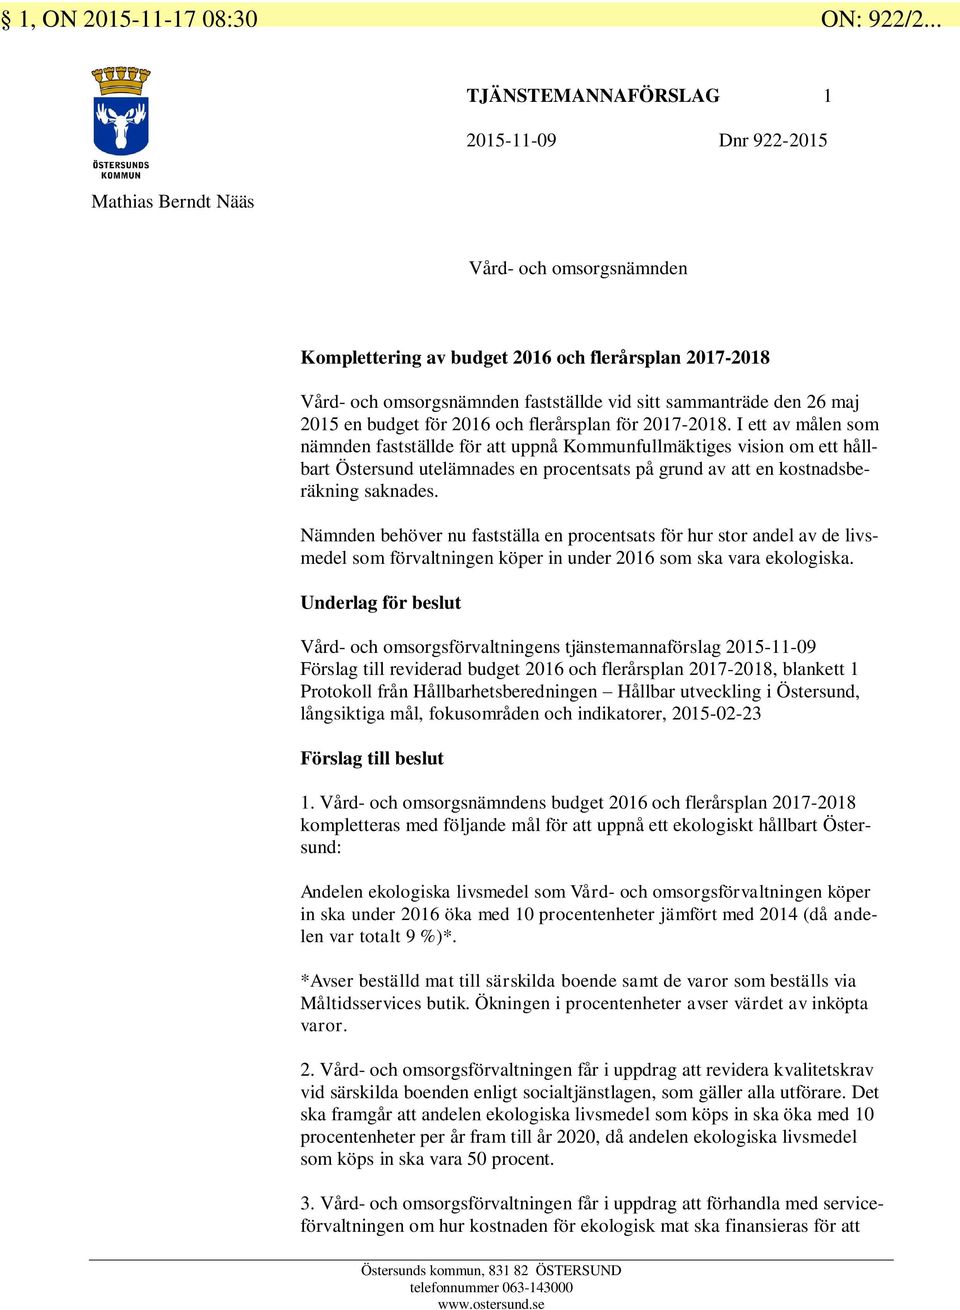 sammanträde den 26 maj 2015 en budget för 2016 och flerårsplan för 2017-2018.